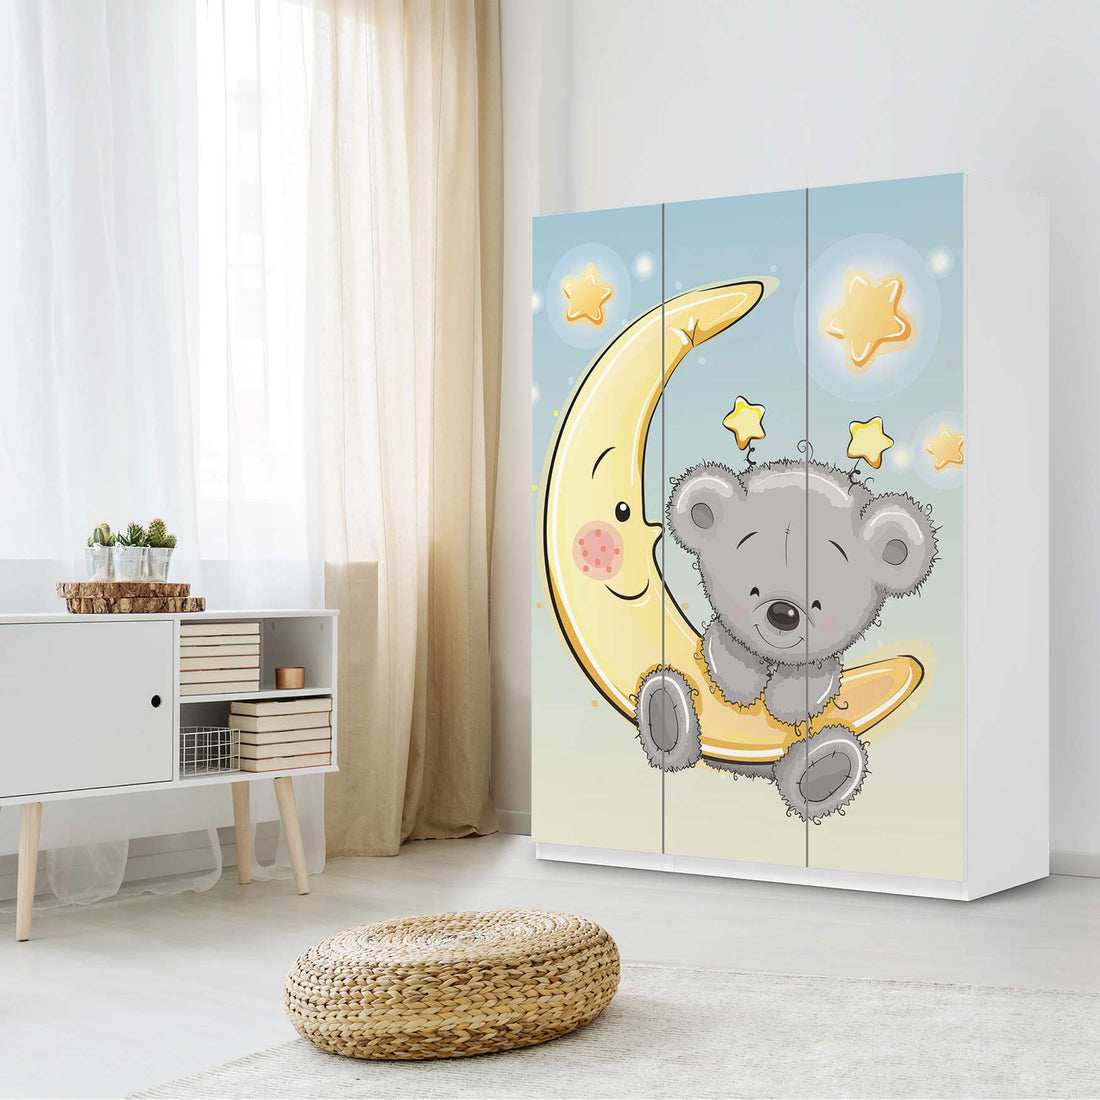 Folie für Möbel Teddy und Mond - IKEA Pax Schrank 201 cm Höhe - 3 Türen - Kinderzimmer